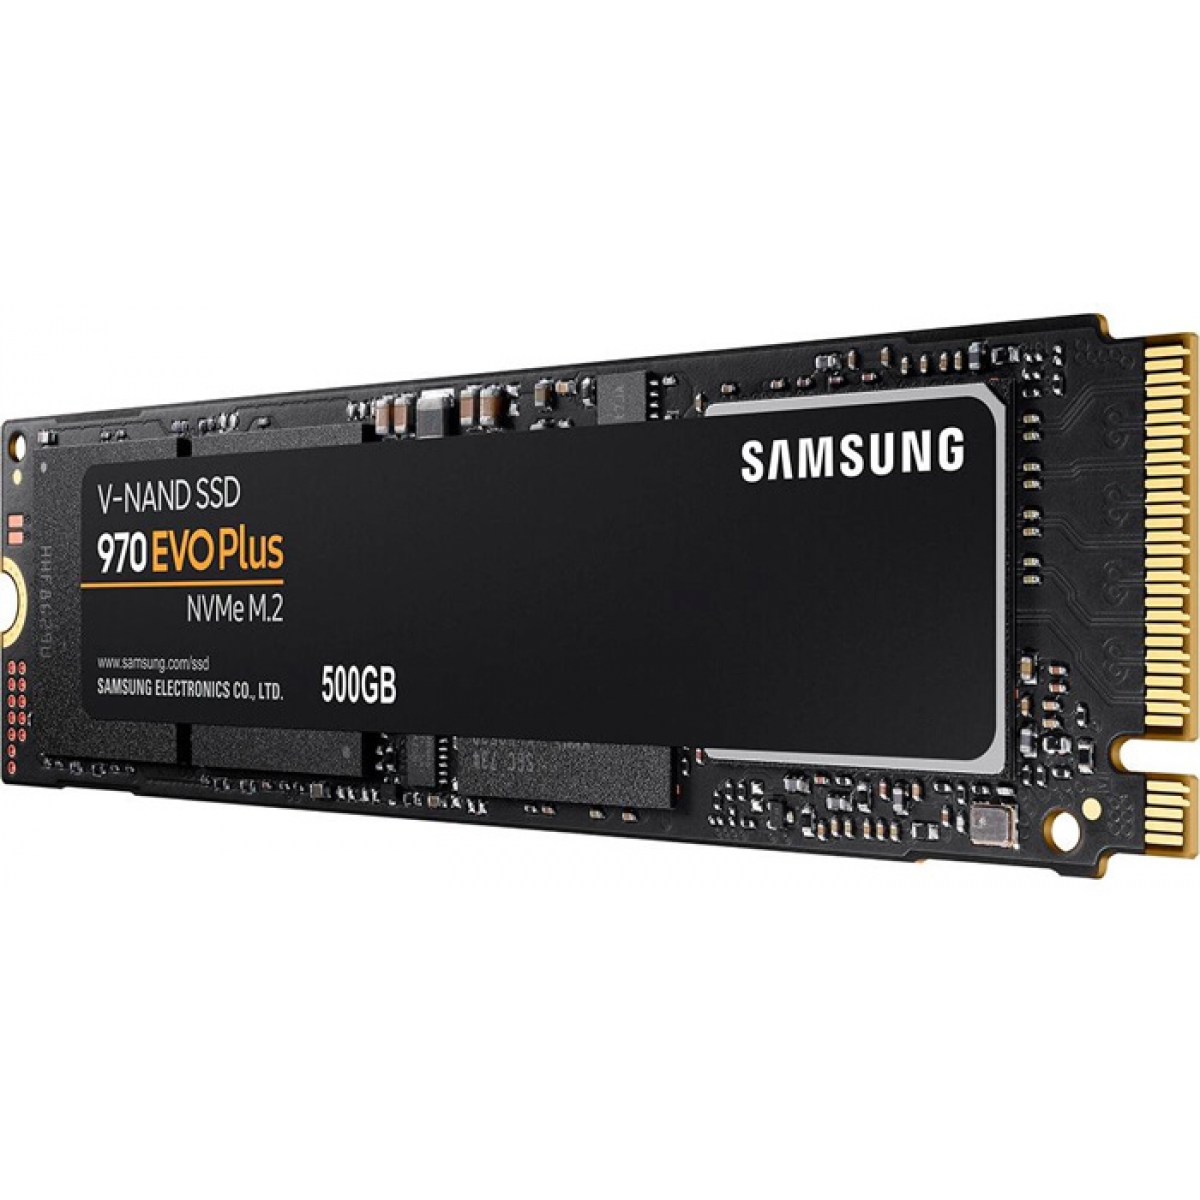 SSD Samsung 970 EVO Plus, 500GB, M.2 2280, NVMe, Leitura 3500MBs e Gravação 3200MBs, MZ-V7S500B-AM